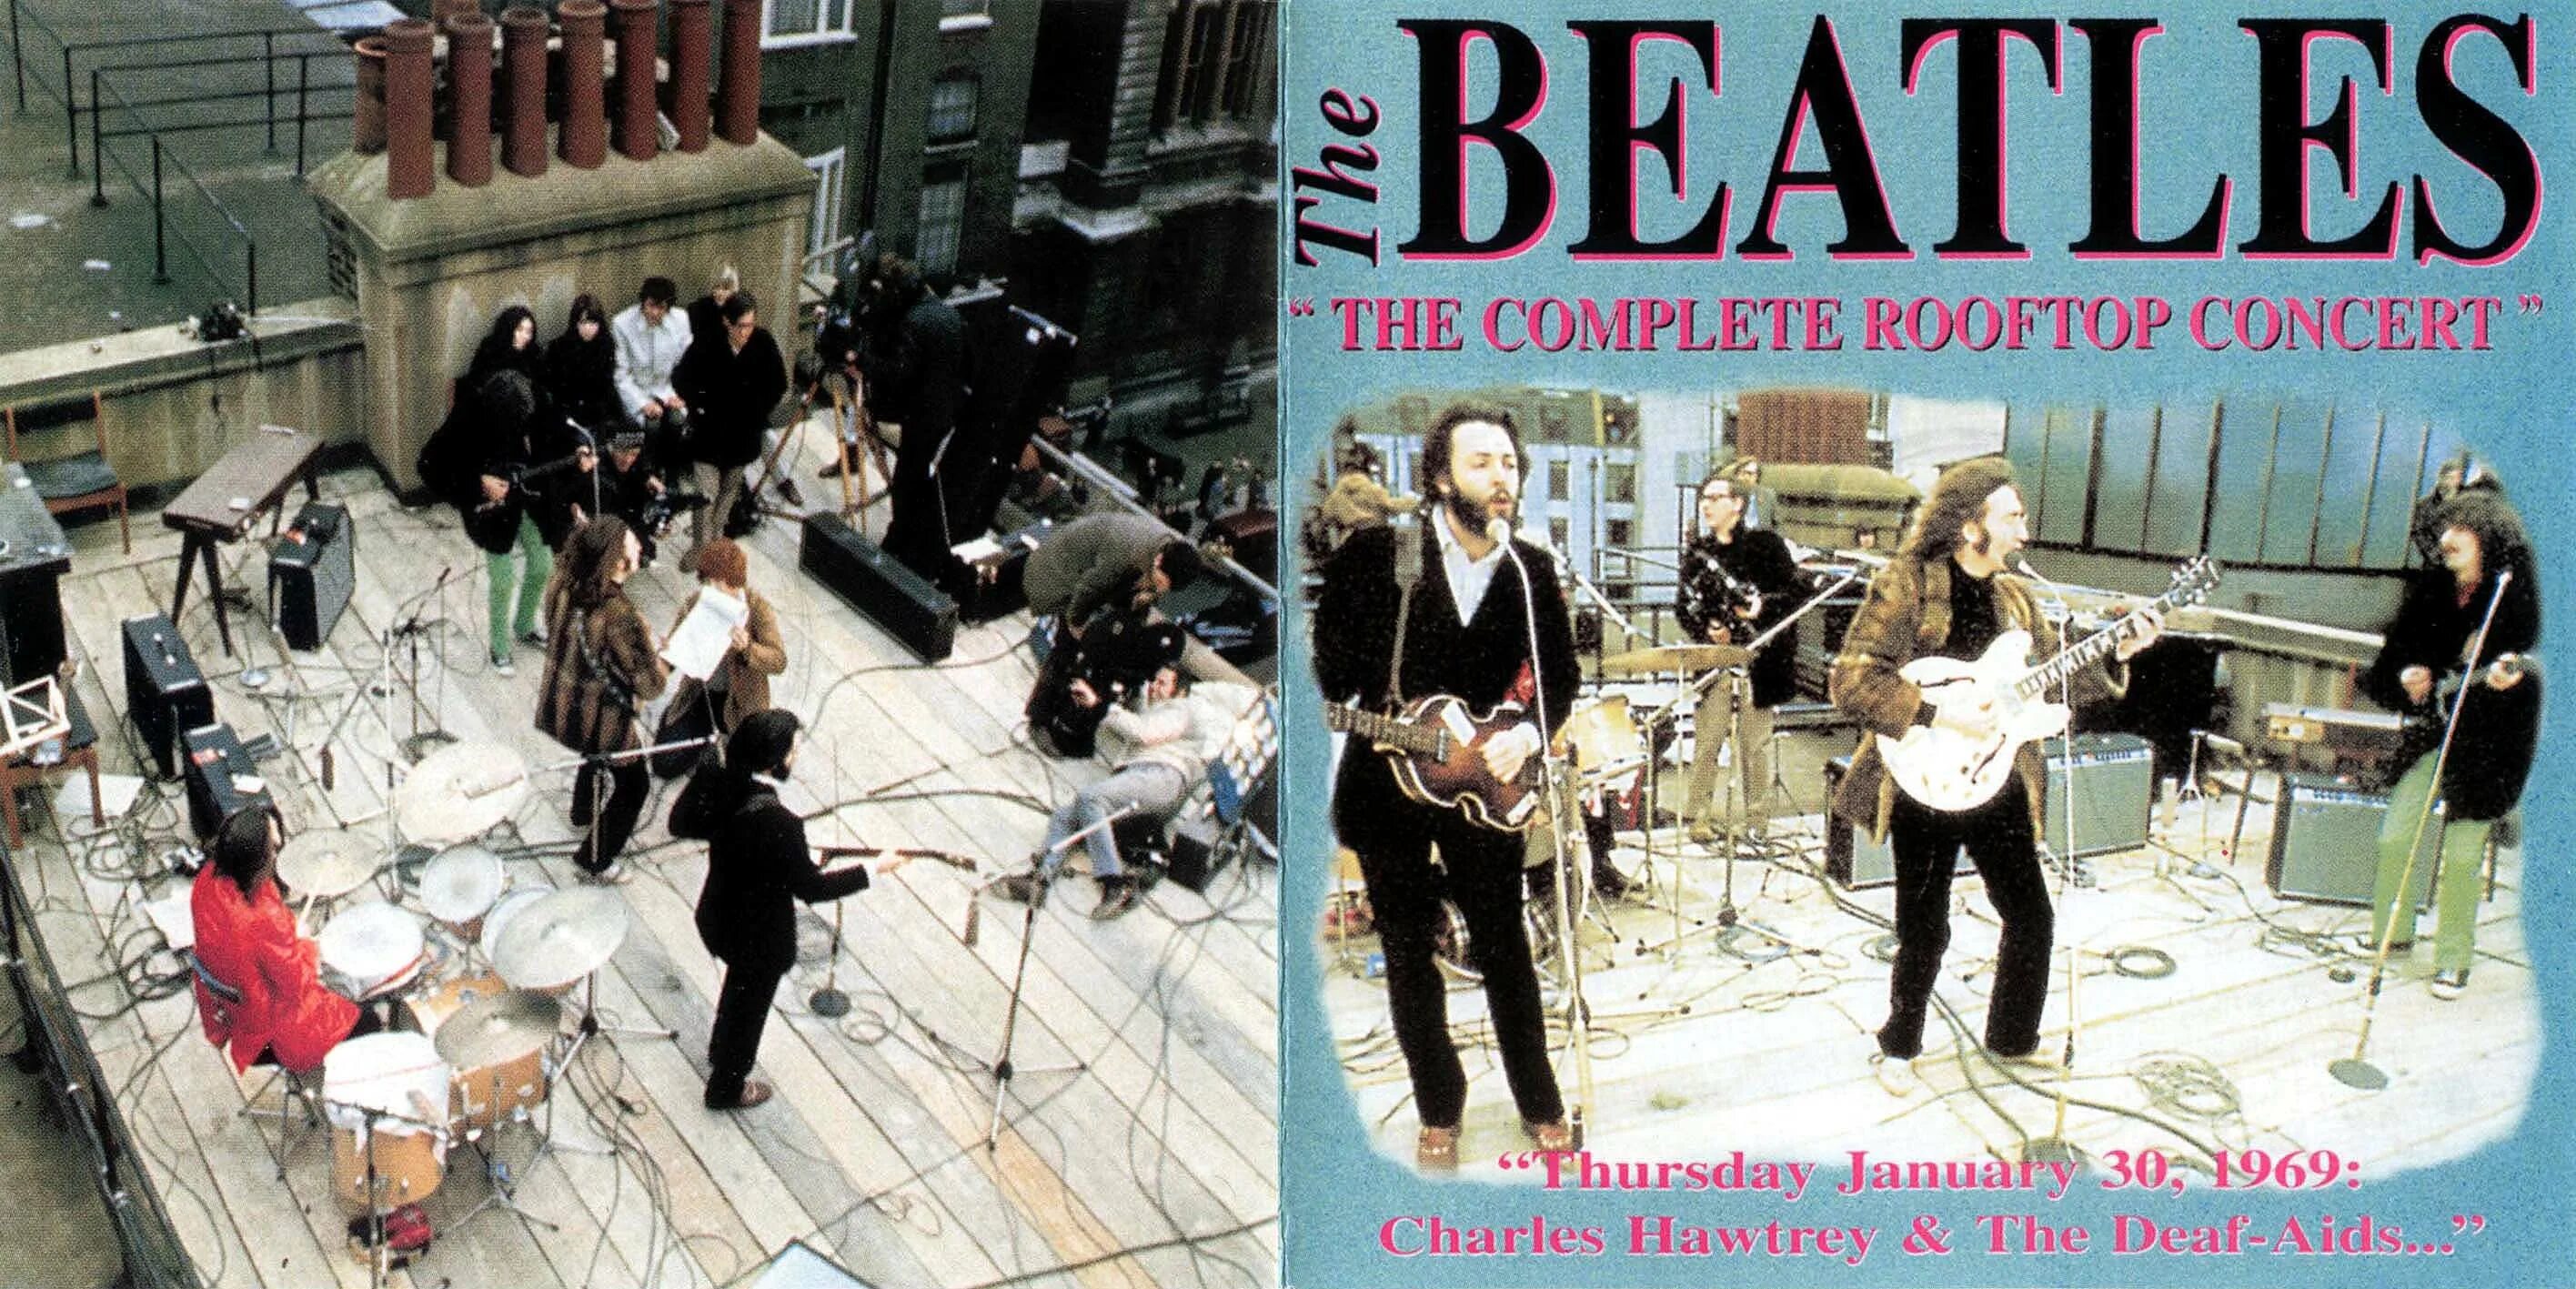 Beatles Rooftop 1969. The Beatles Rooftop Concert 1969. Beatles Rooftop Concert. Get back the beatles